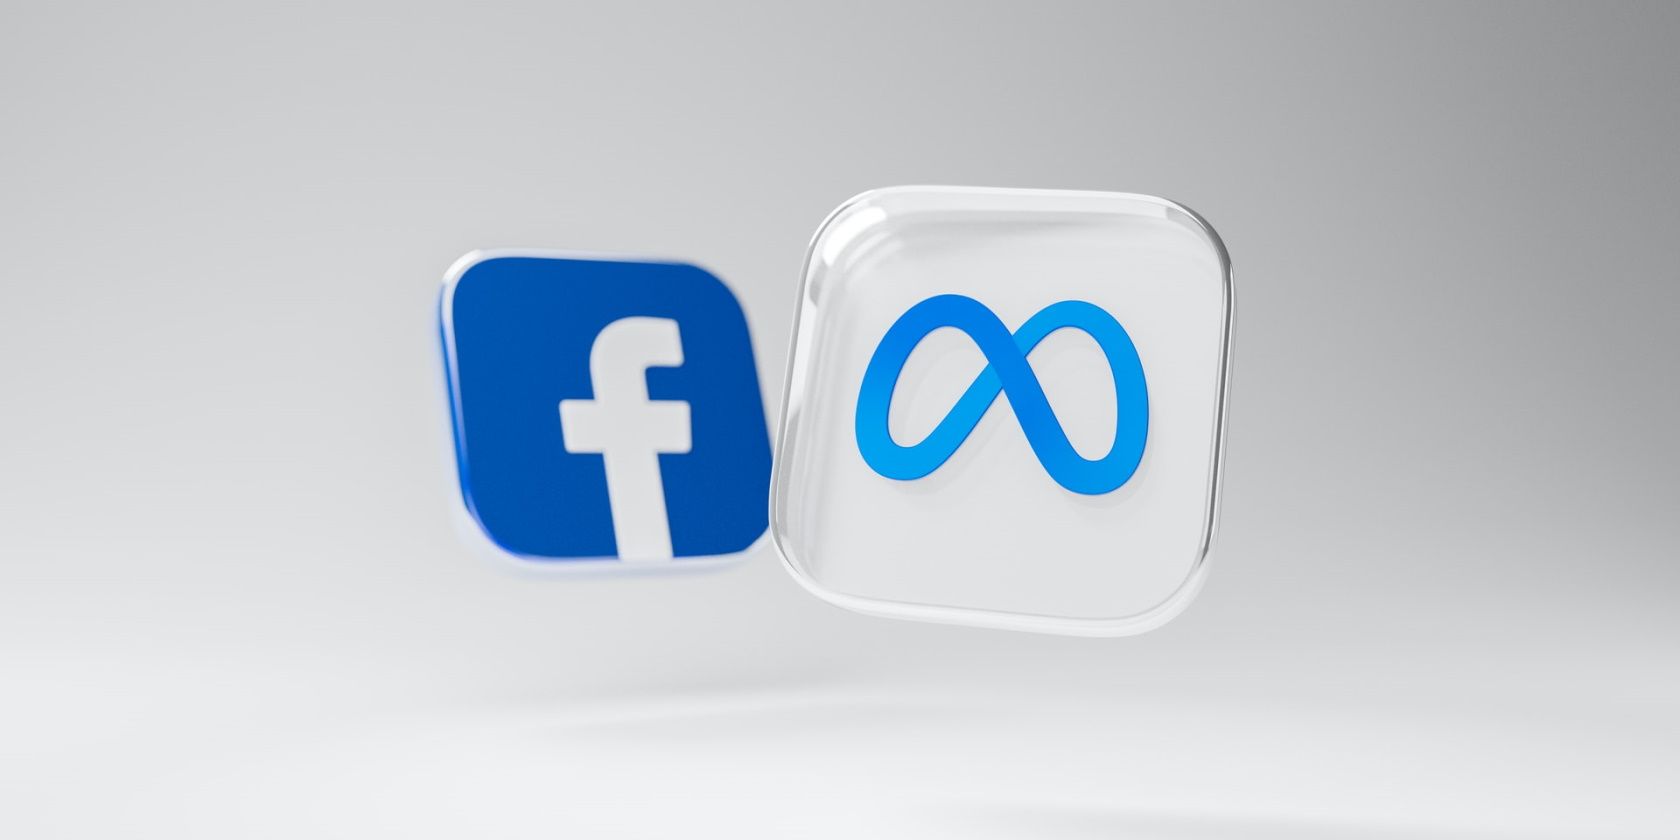 Facebook and Meta logos